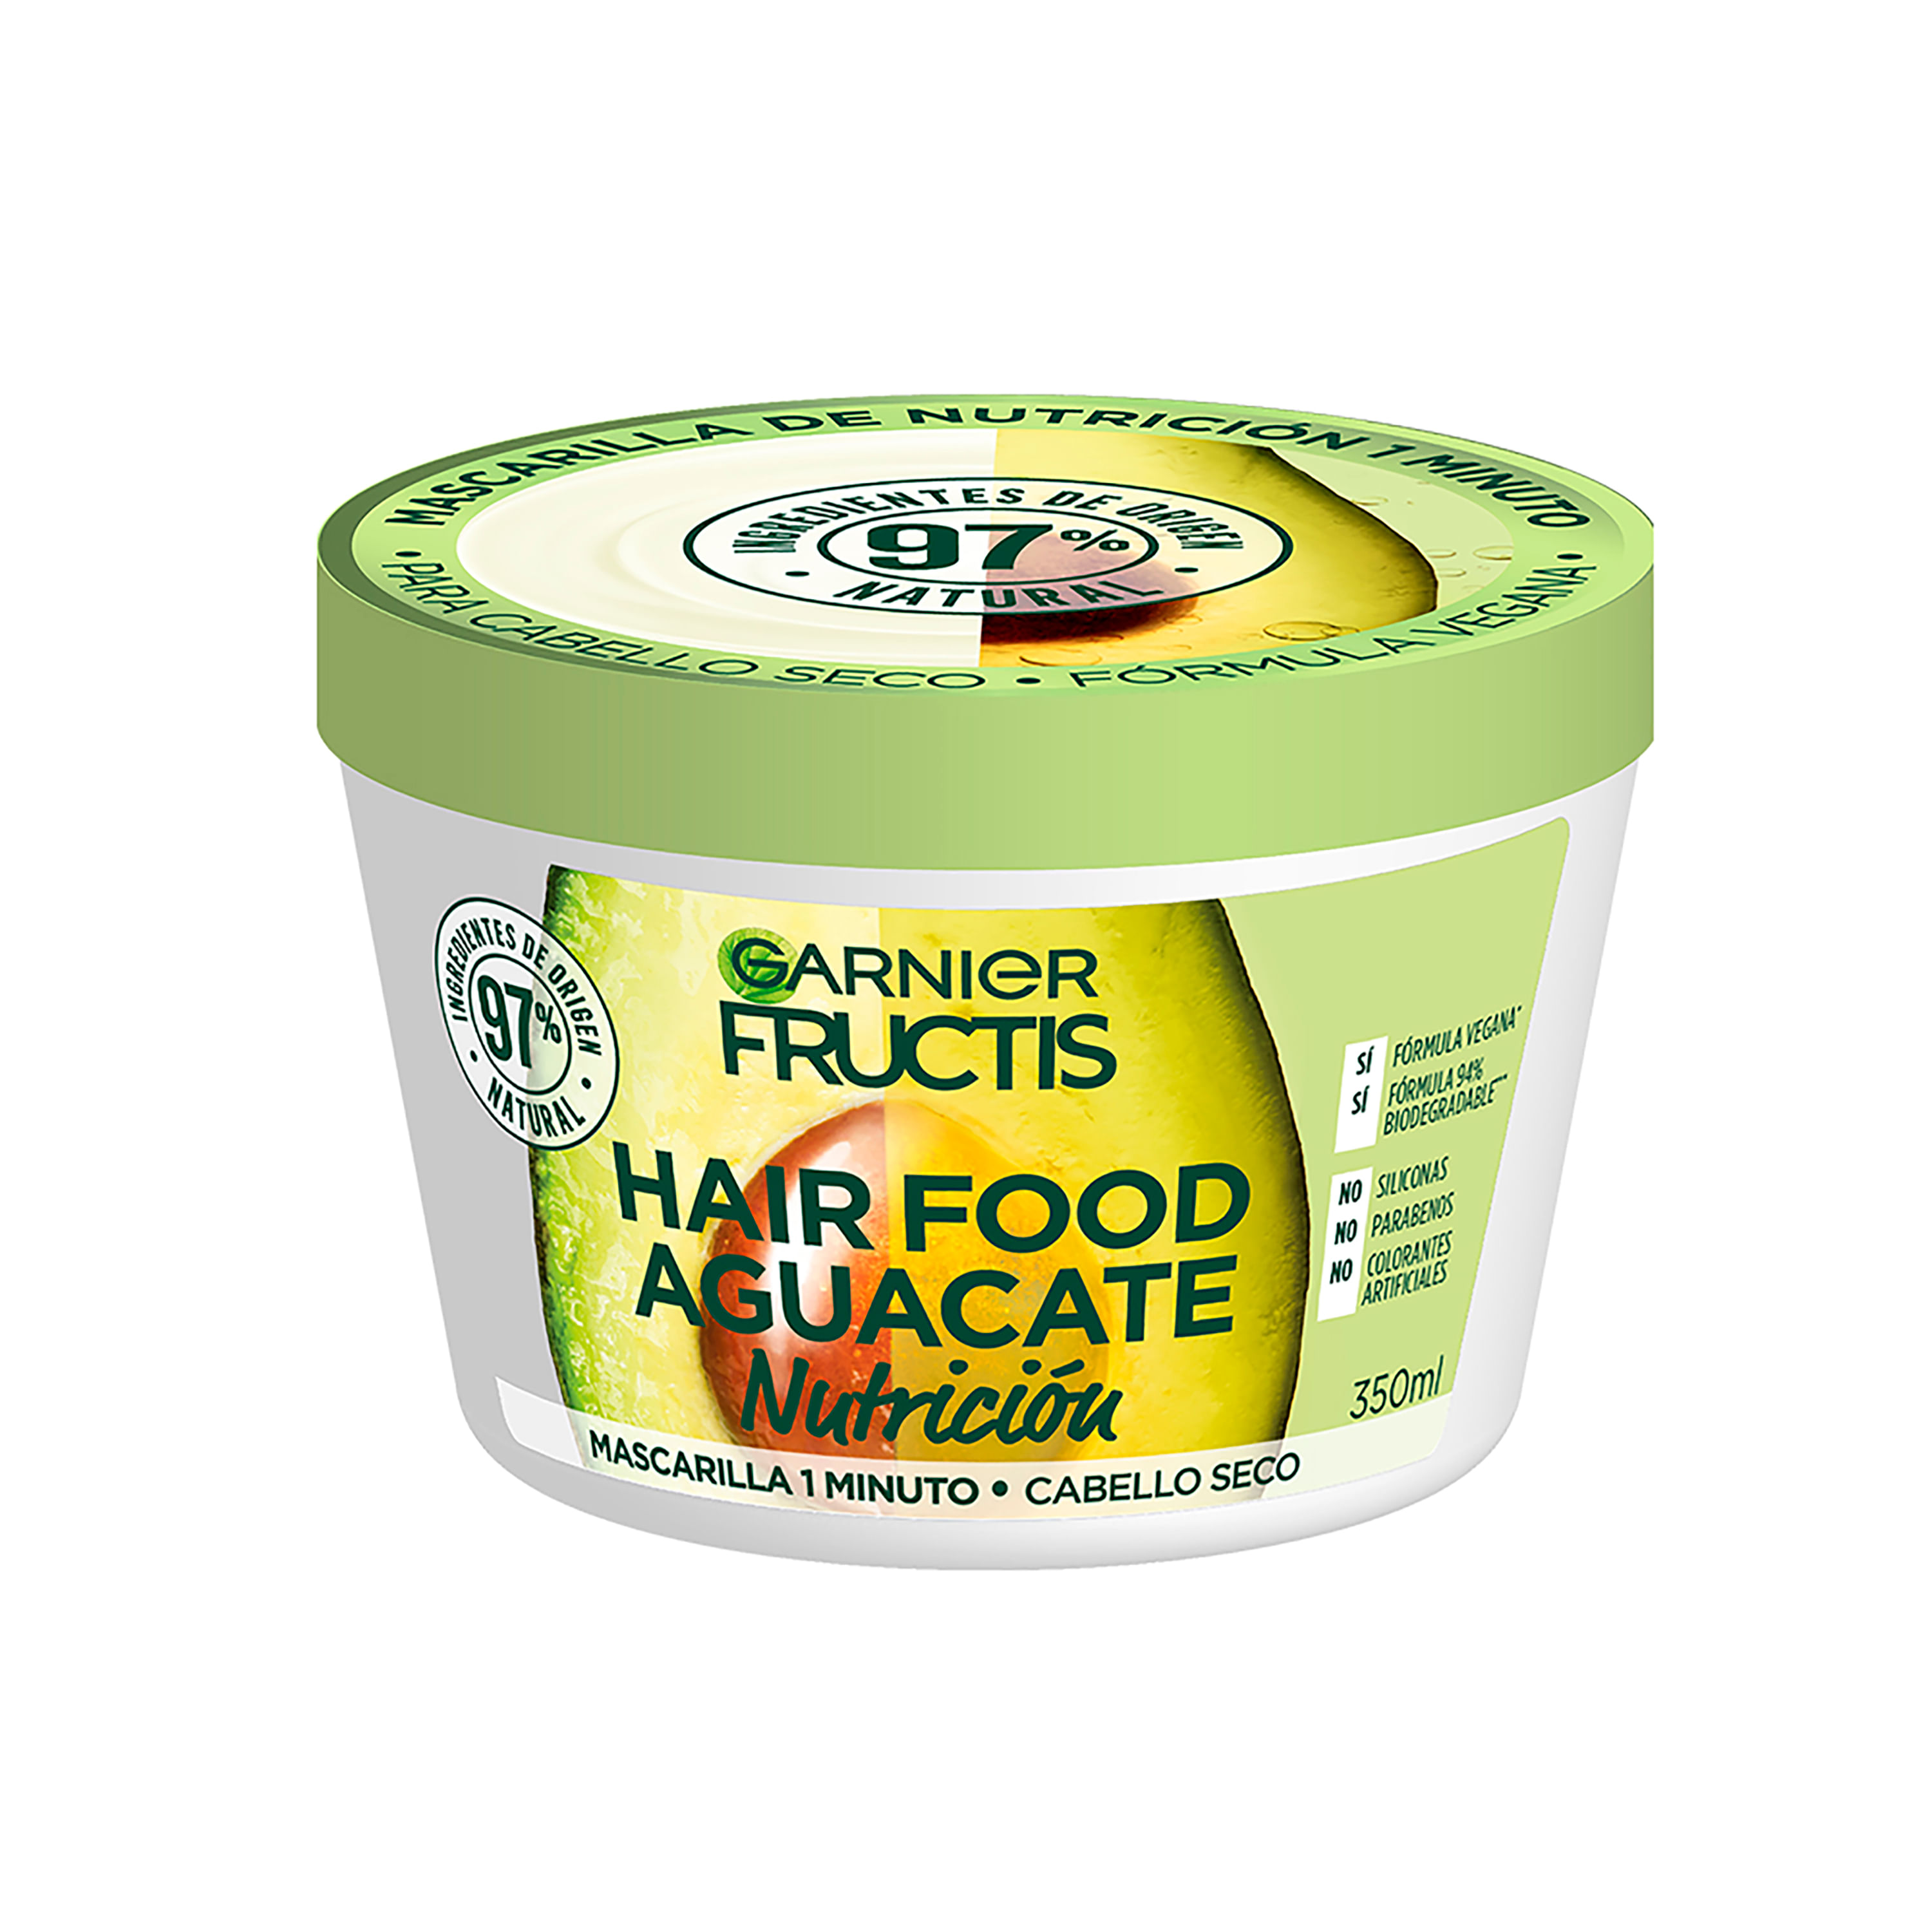 Comprar Hair Food Mascarilla De Nutrición Garnier Fructis Aguacate- 350ml Walmart Costa Rica